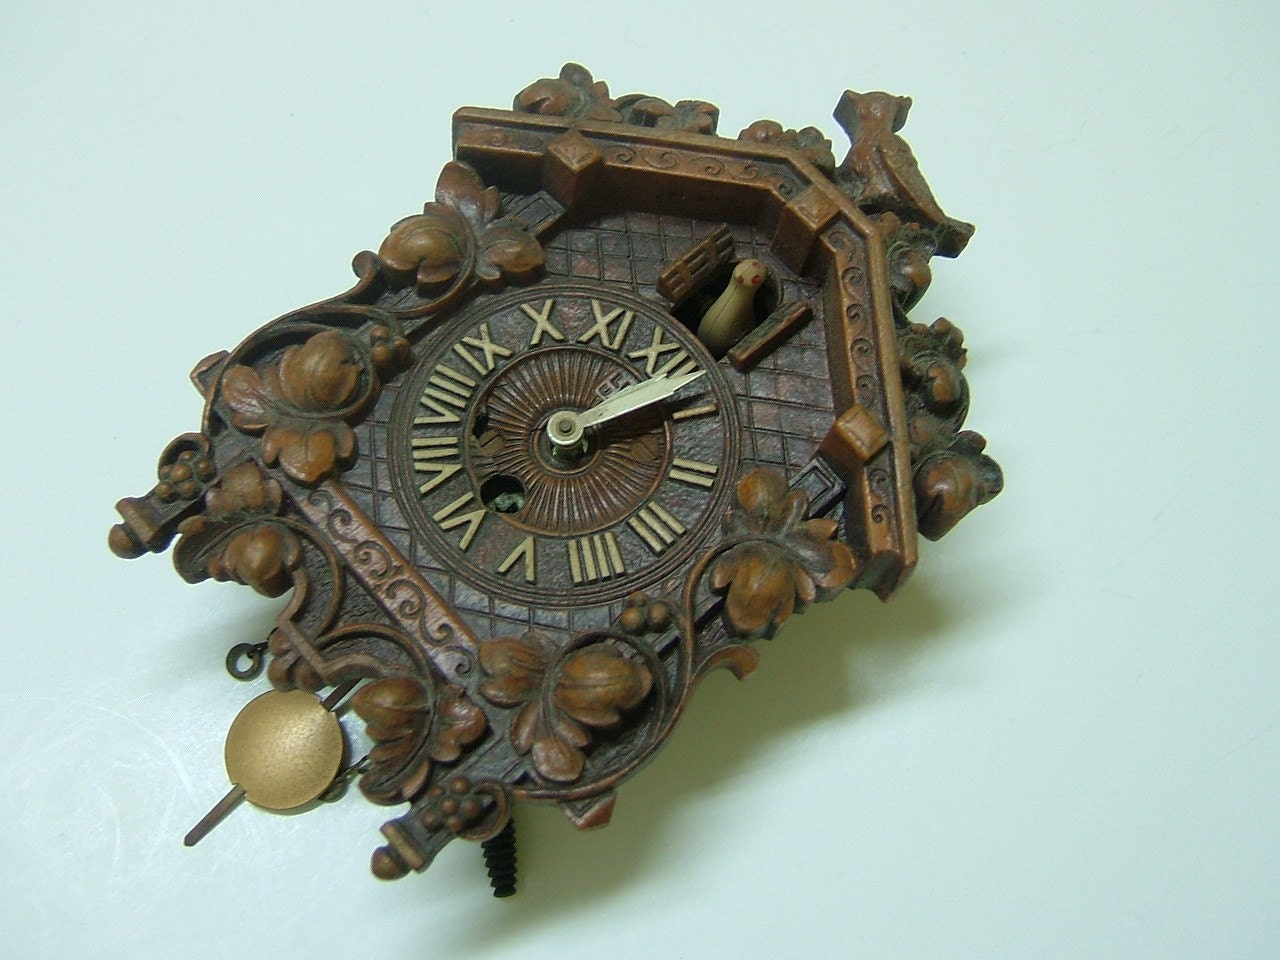 lux clock mini cuckoo clock